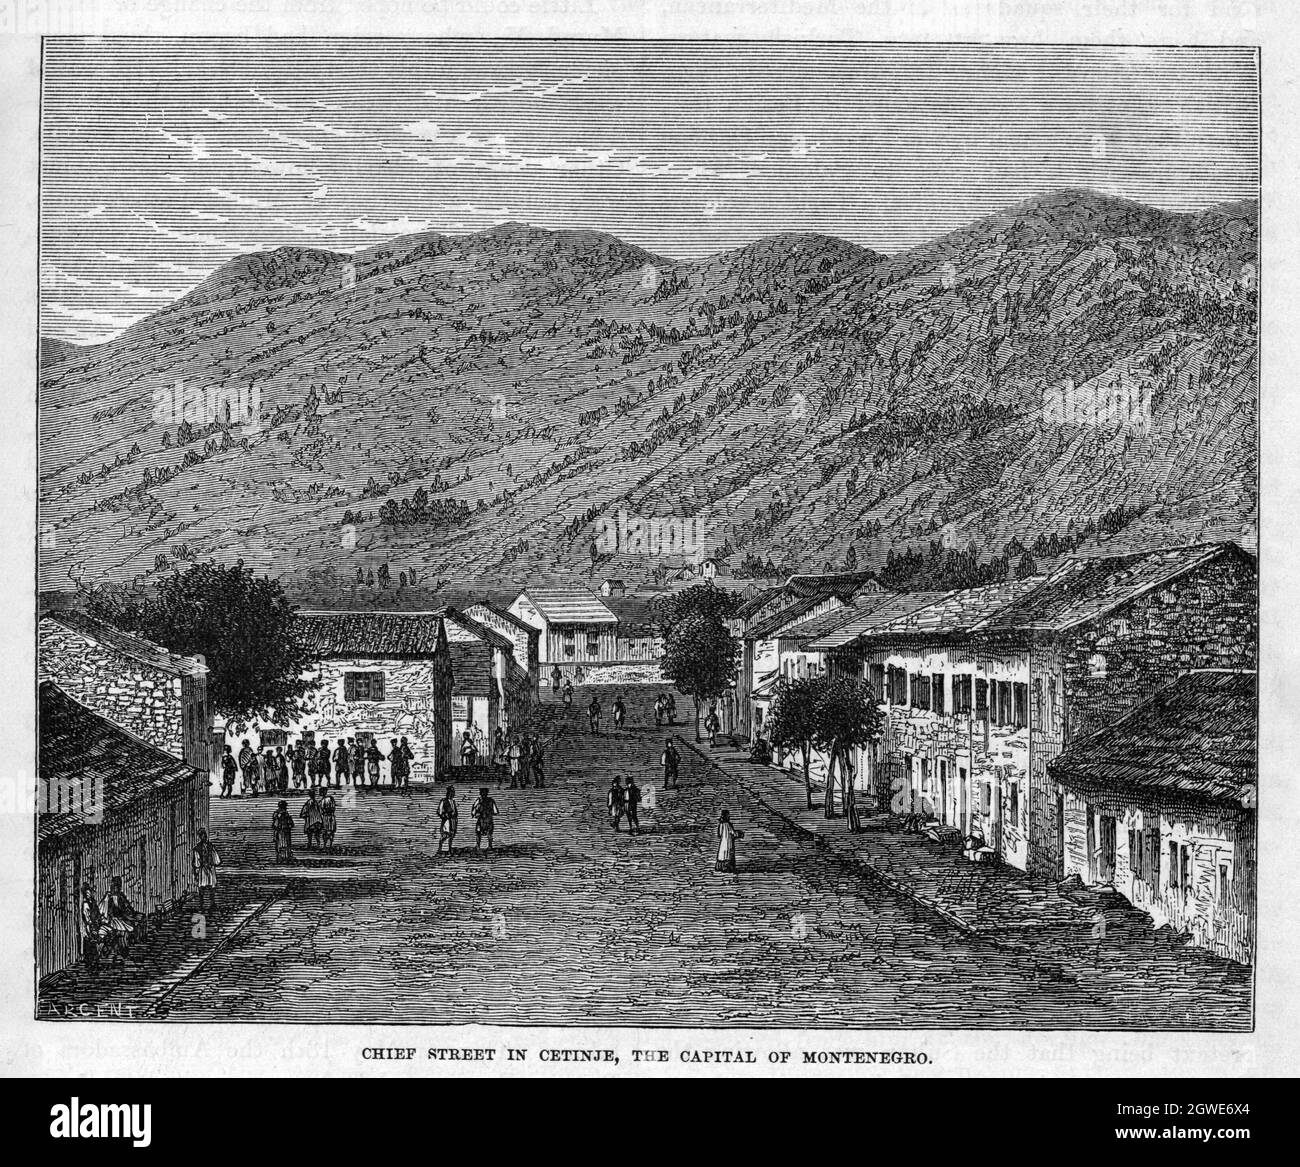 La strada principale di Cetinje, capitale del Montenegro, circa 1876. Foto Stock